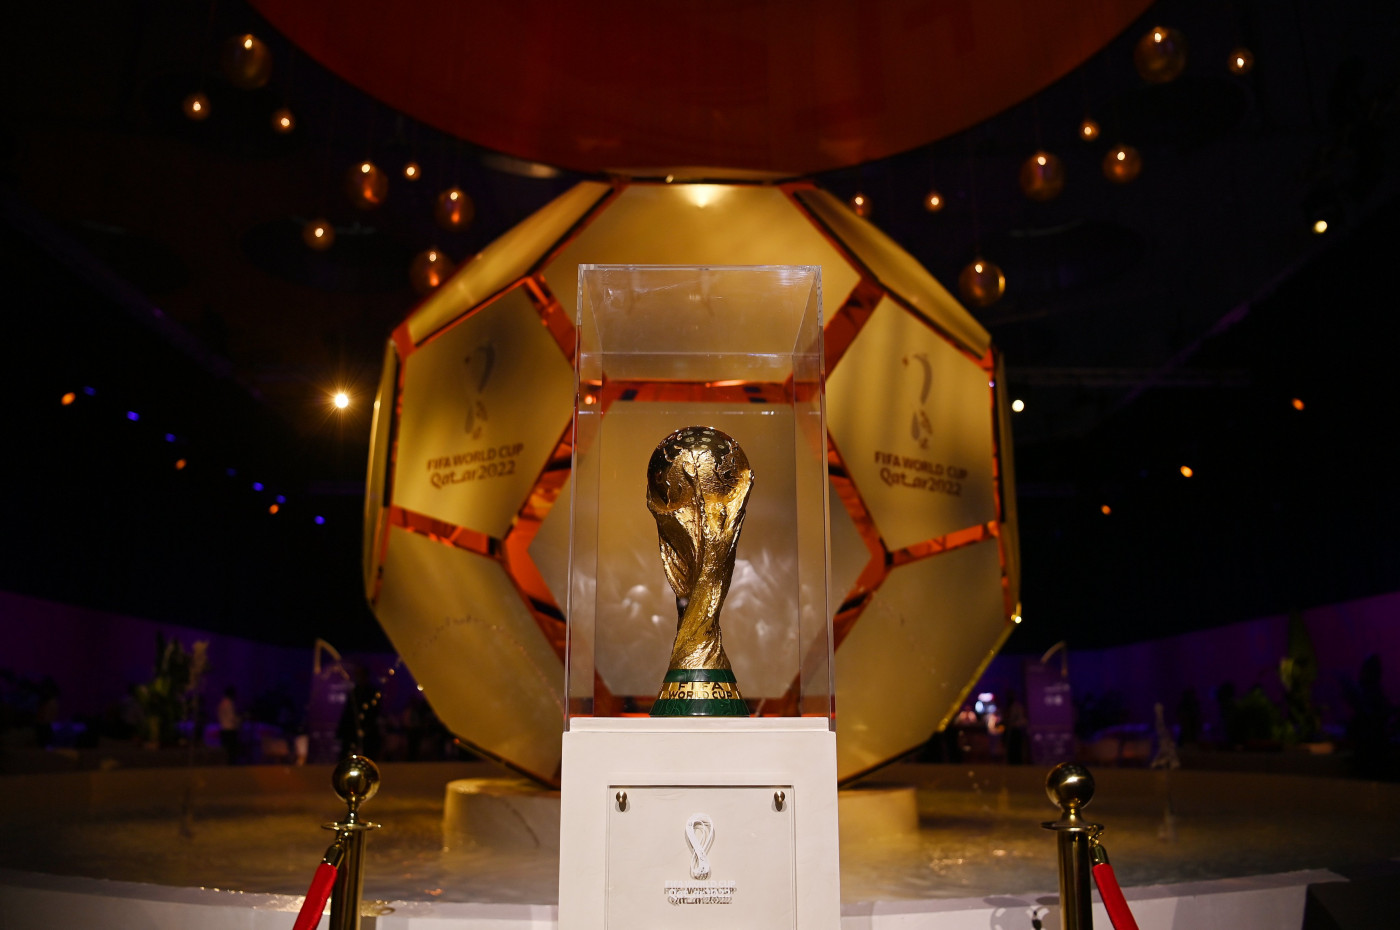 Sorteio da fase de grupos da Copa do Mundo 2022 foi realizado nesta sexta-feira, 1º de abril